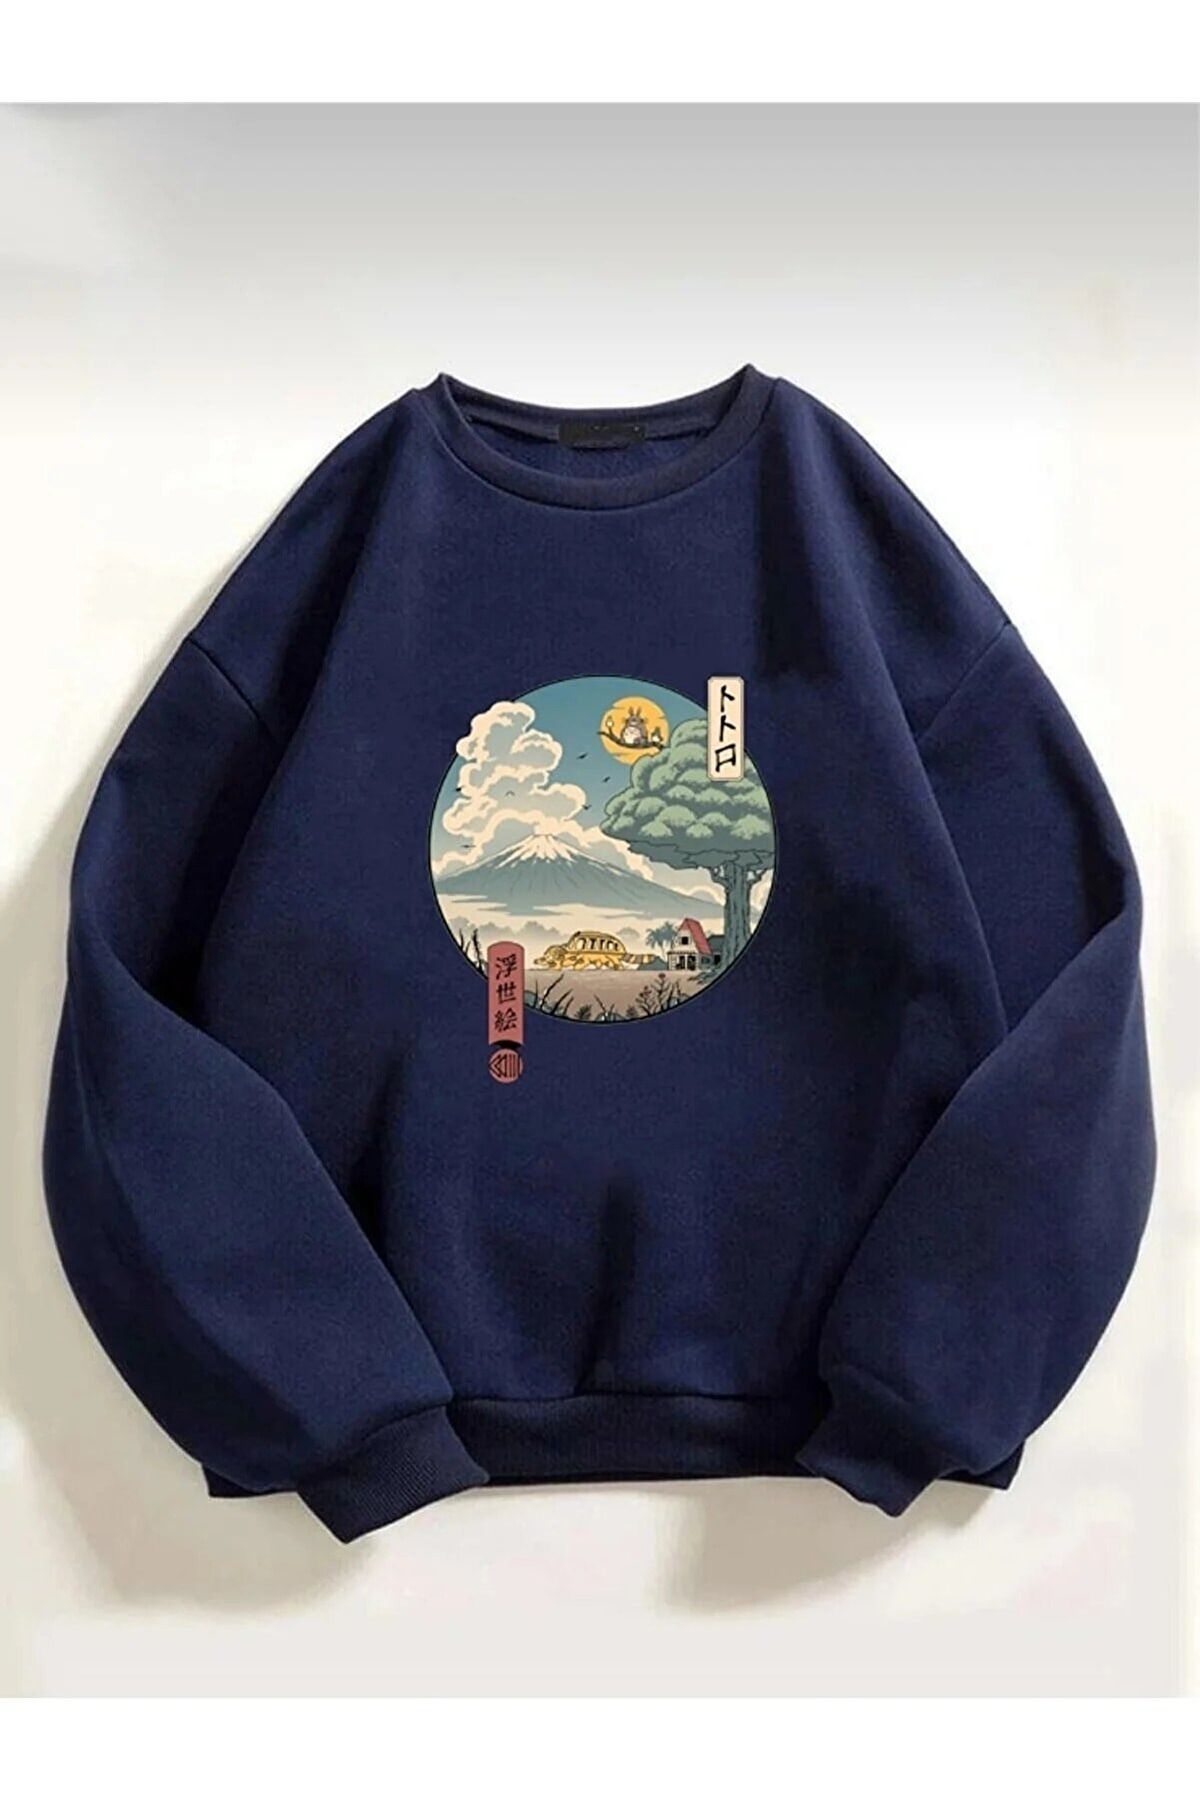 Trendseninle Unisex Totoro Anime Baskılı Oversize Sweatshirt